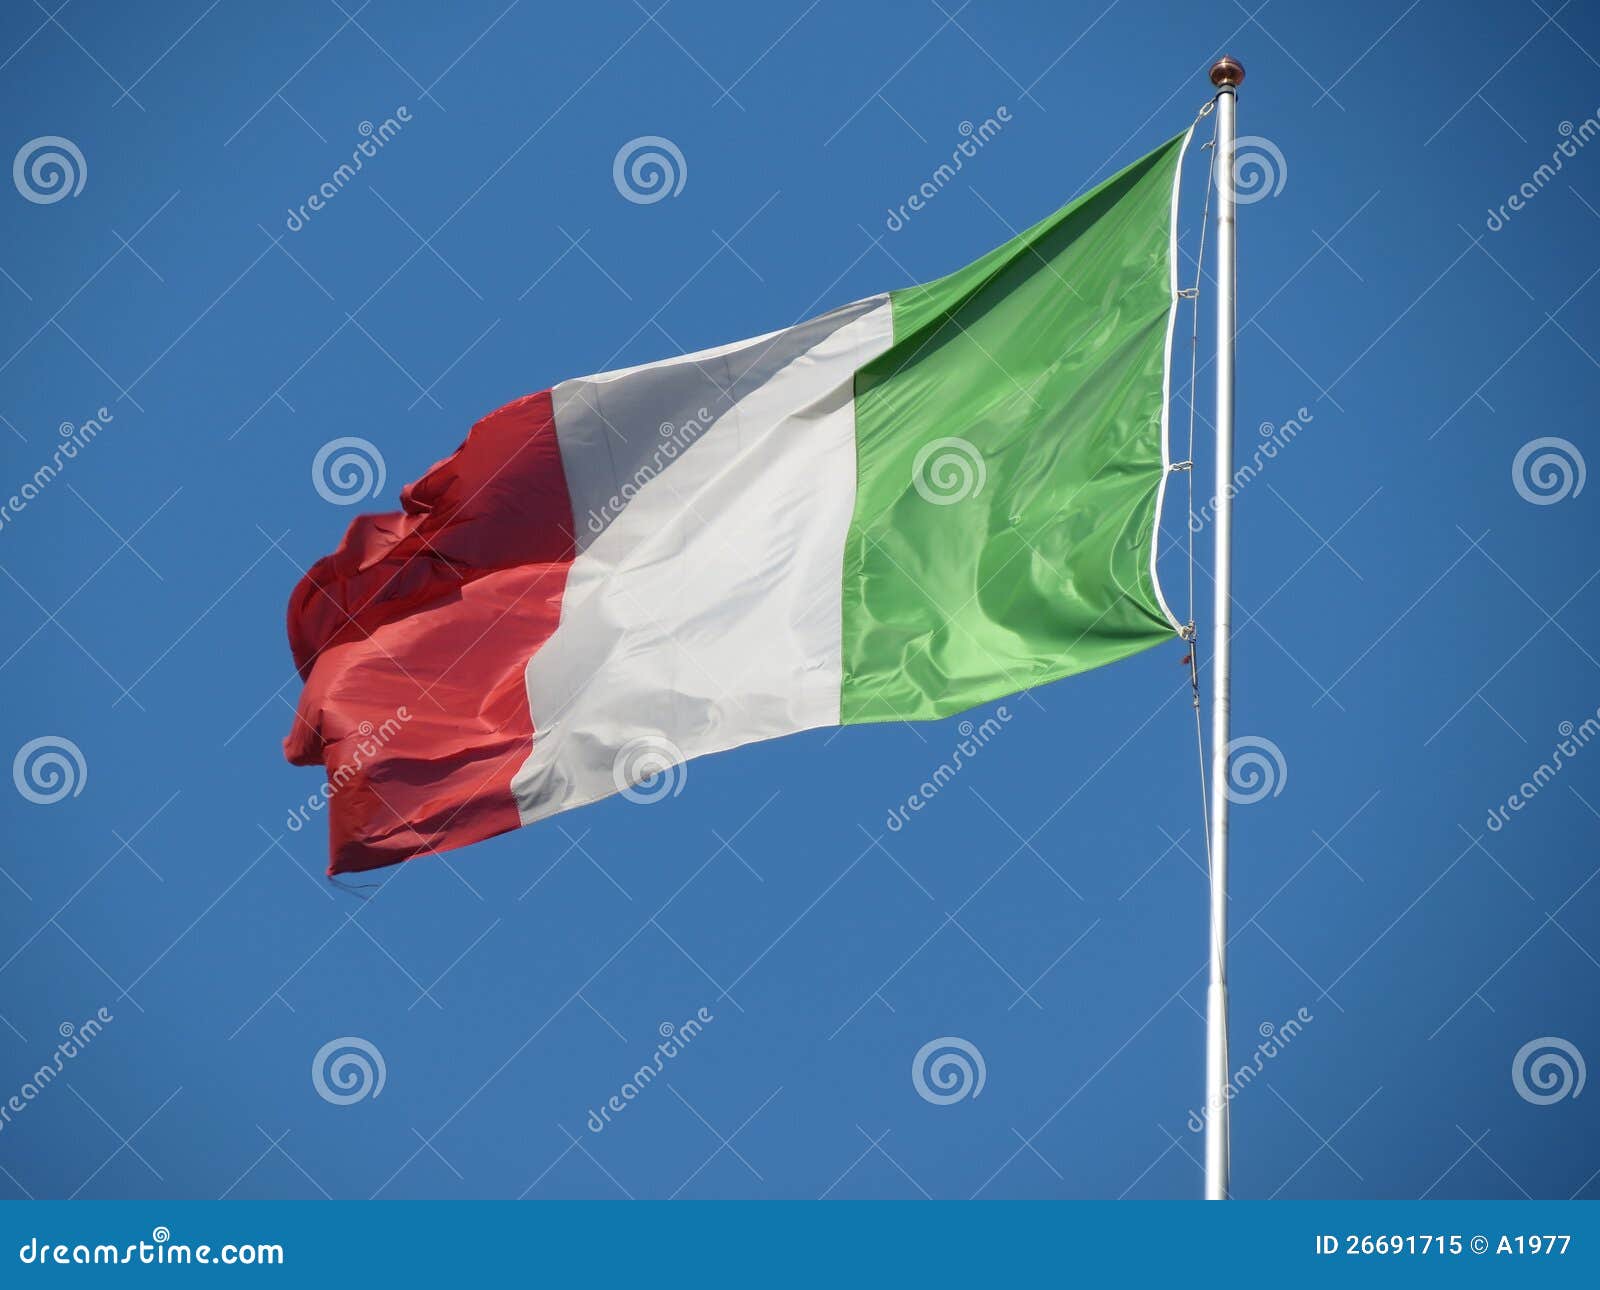 Italian flag stock image. Image of language, europe, country - 26691715